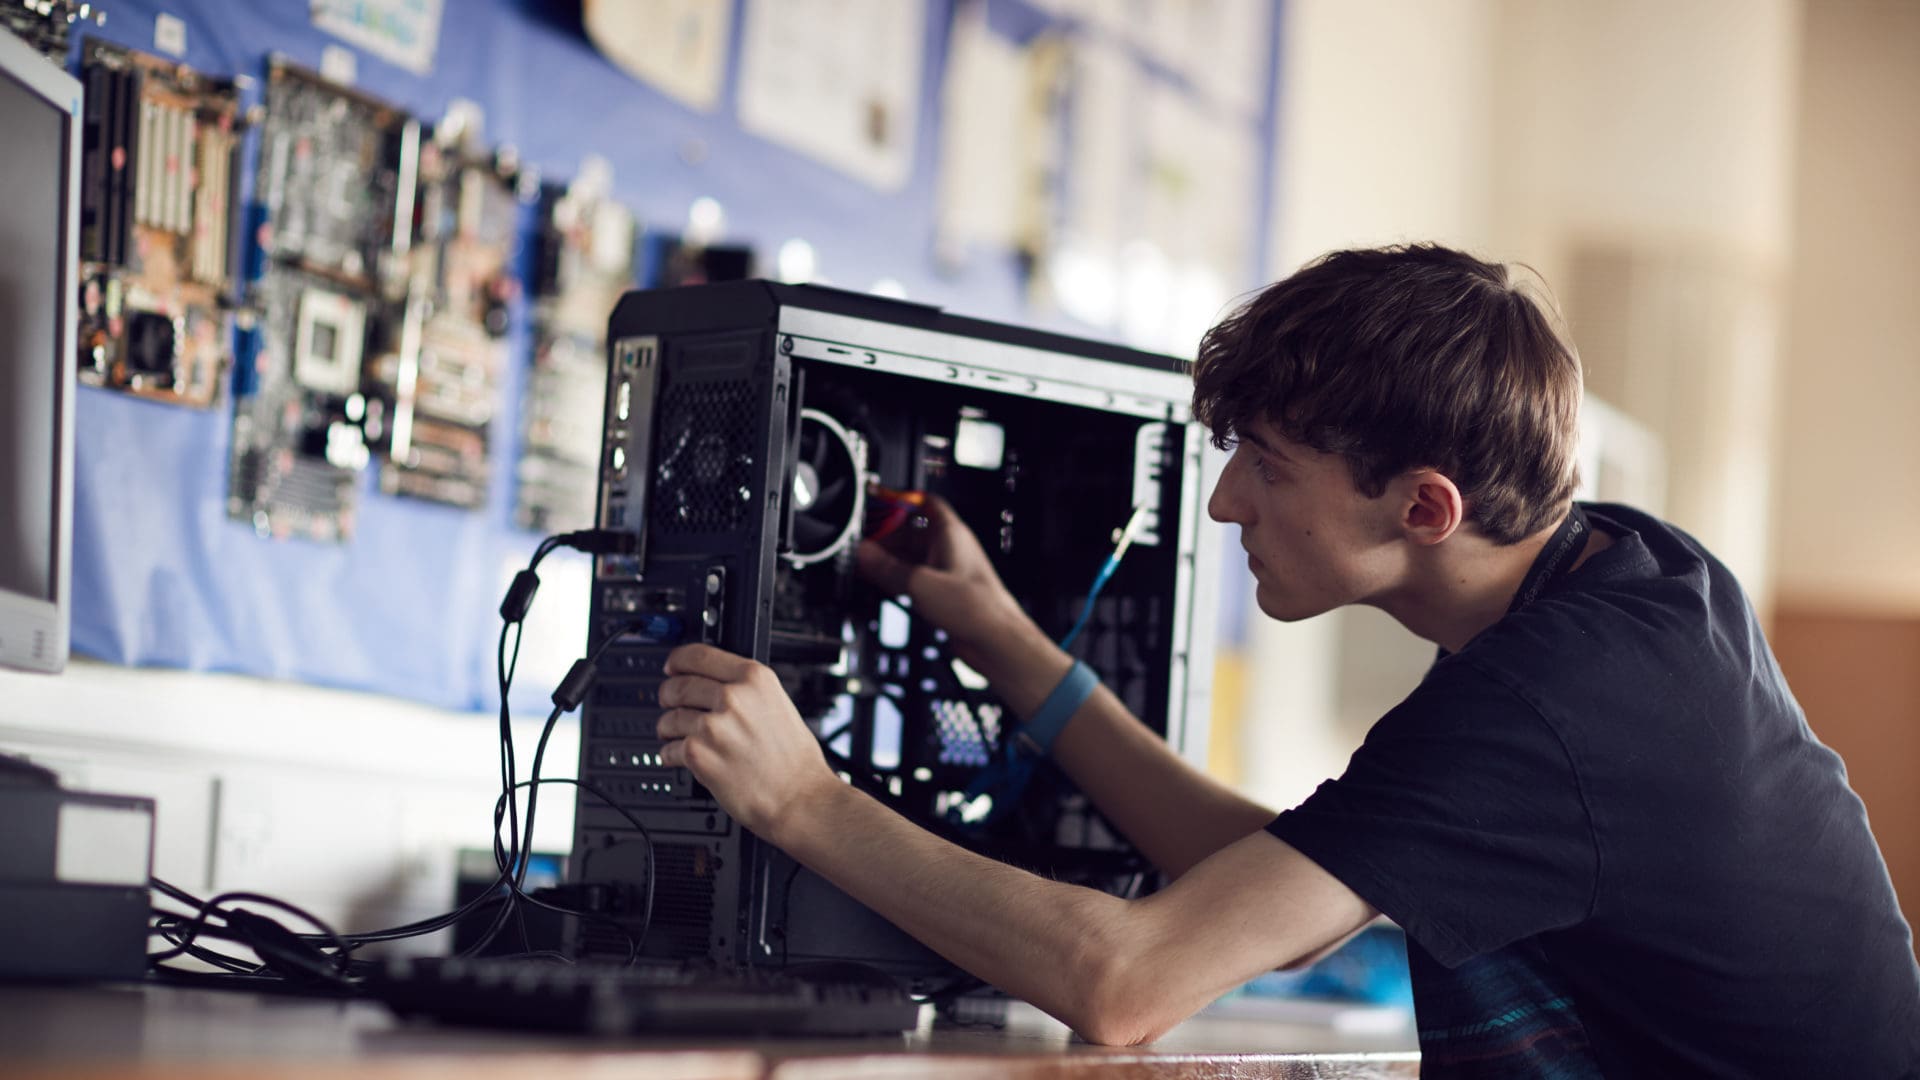 ϲ student focusing on fixing a computer on an IT course